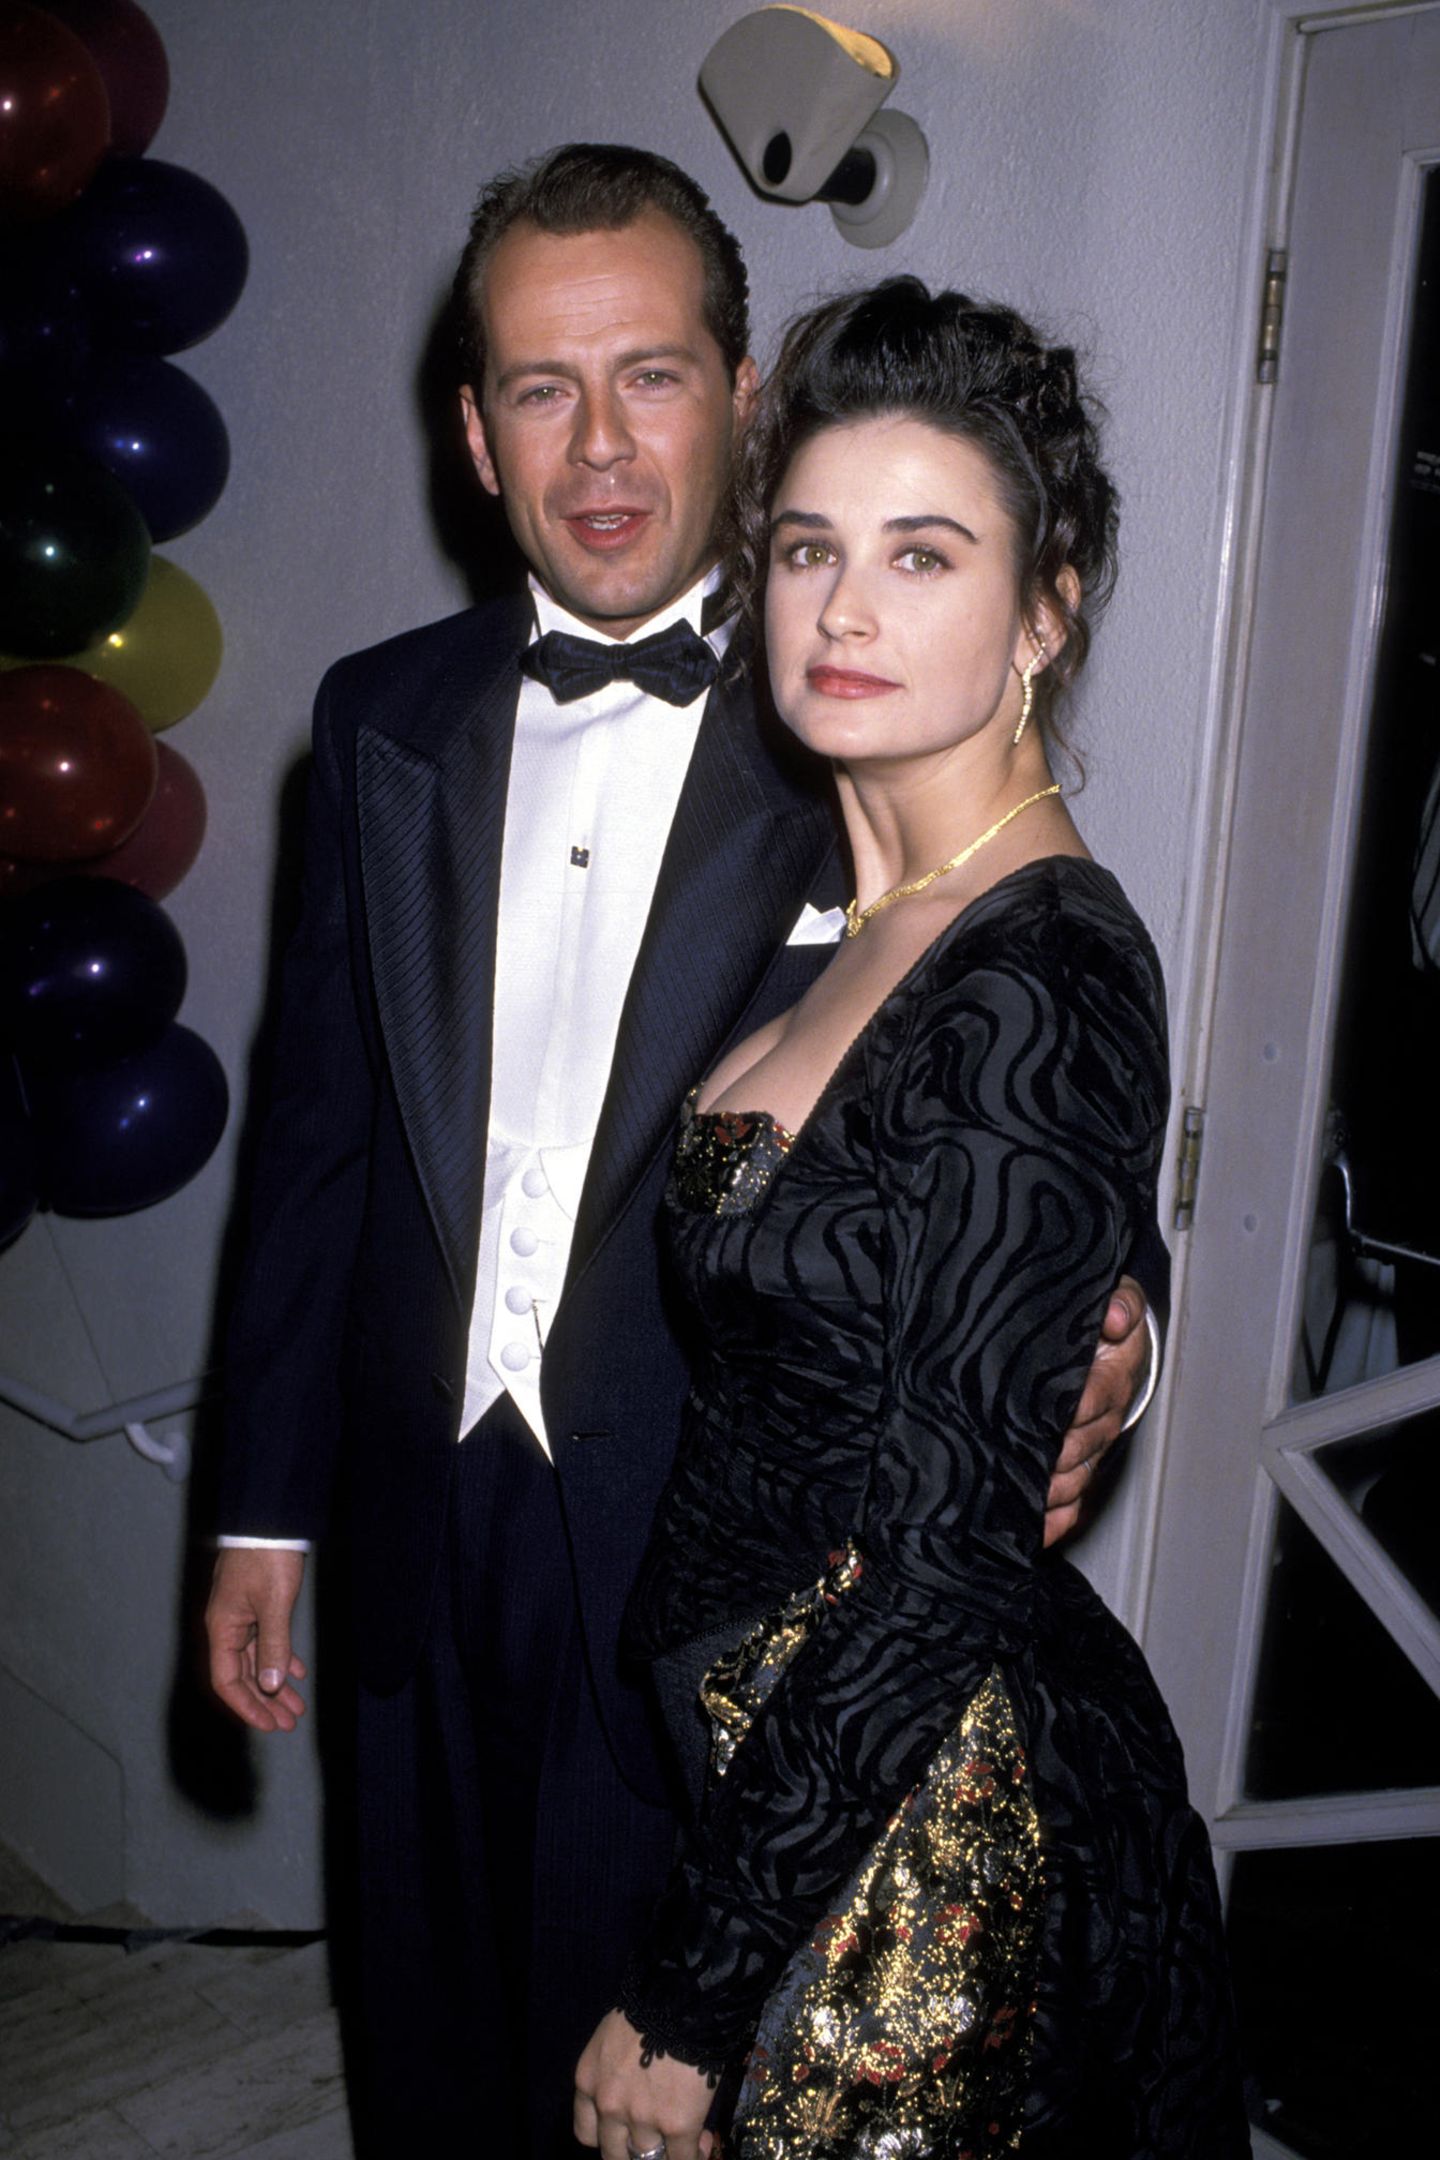 Demi Moore, hier mit ihrem zweiten Ehemann Bruce Willis im Jahr 1989, ist unter anderem durch Rollen in "Ghost" und "Striptease" zu einem absoluten Hollywood-Liebling geworden und steht seit über 30 Jahren im Rampenlicht. Dunkle Haare, grüne Augen und Porzellan-Teint - Demi gilt als Schönheit! 